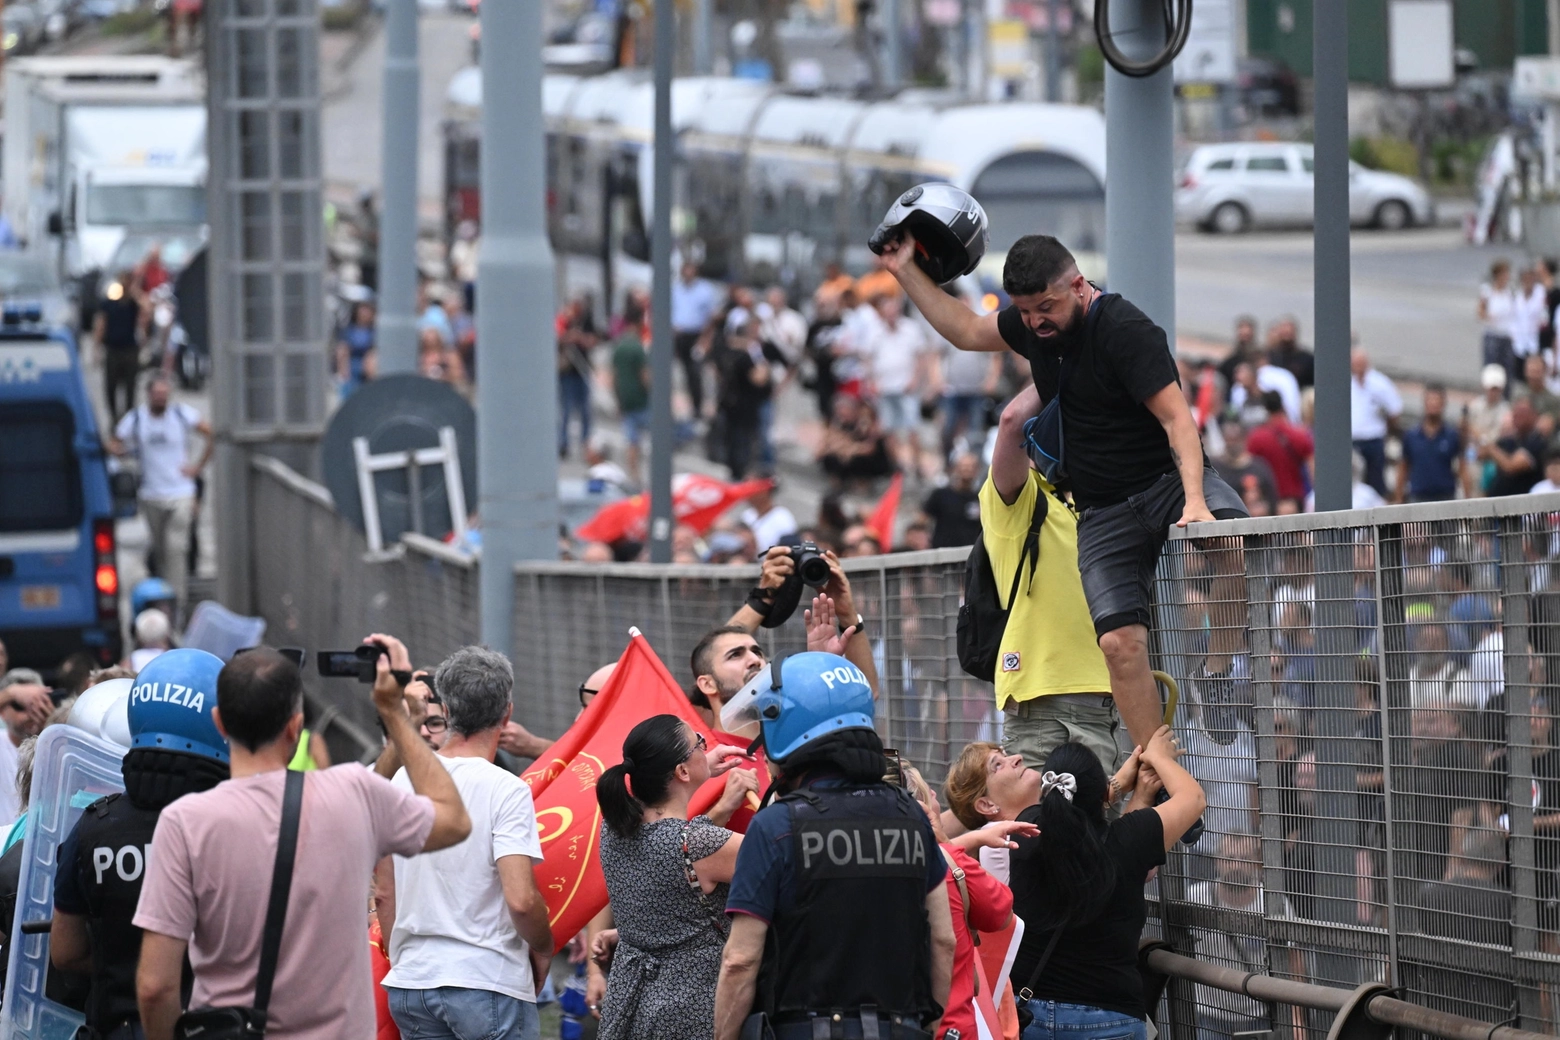 Reddito di cittadinanza, manifestanti forzano cordone polizia, tensione